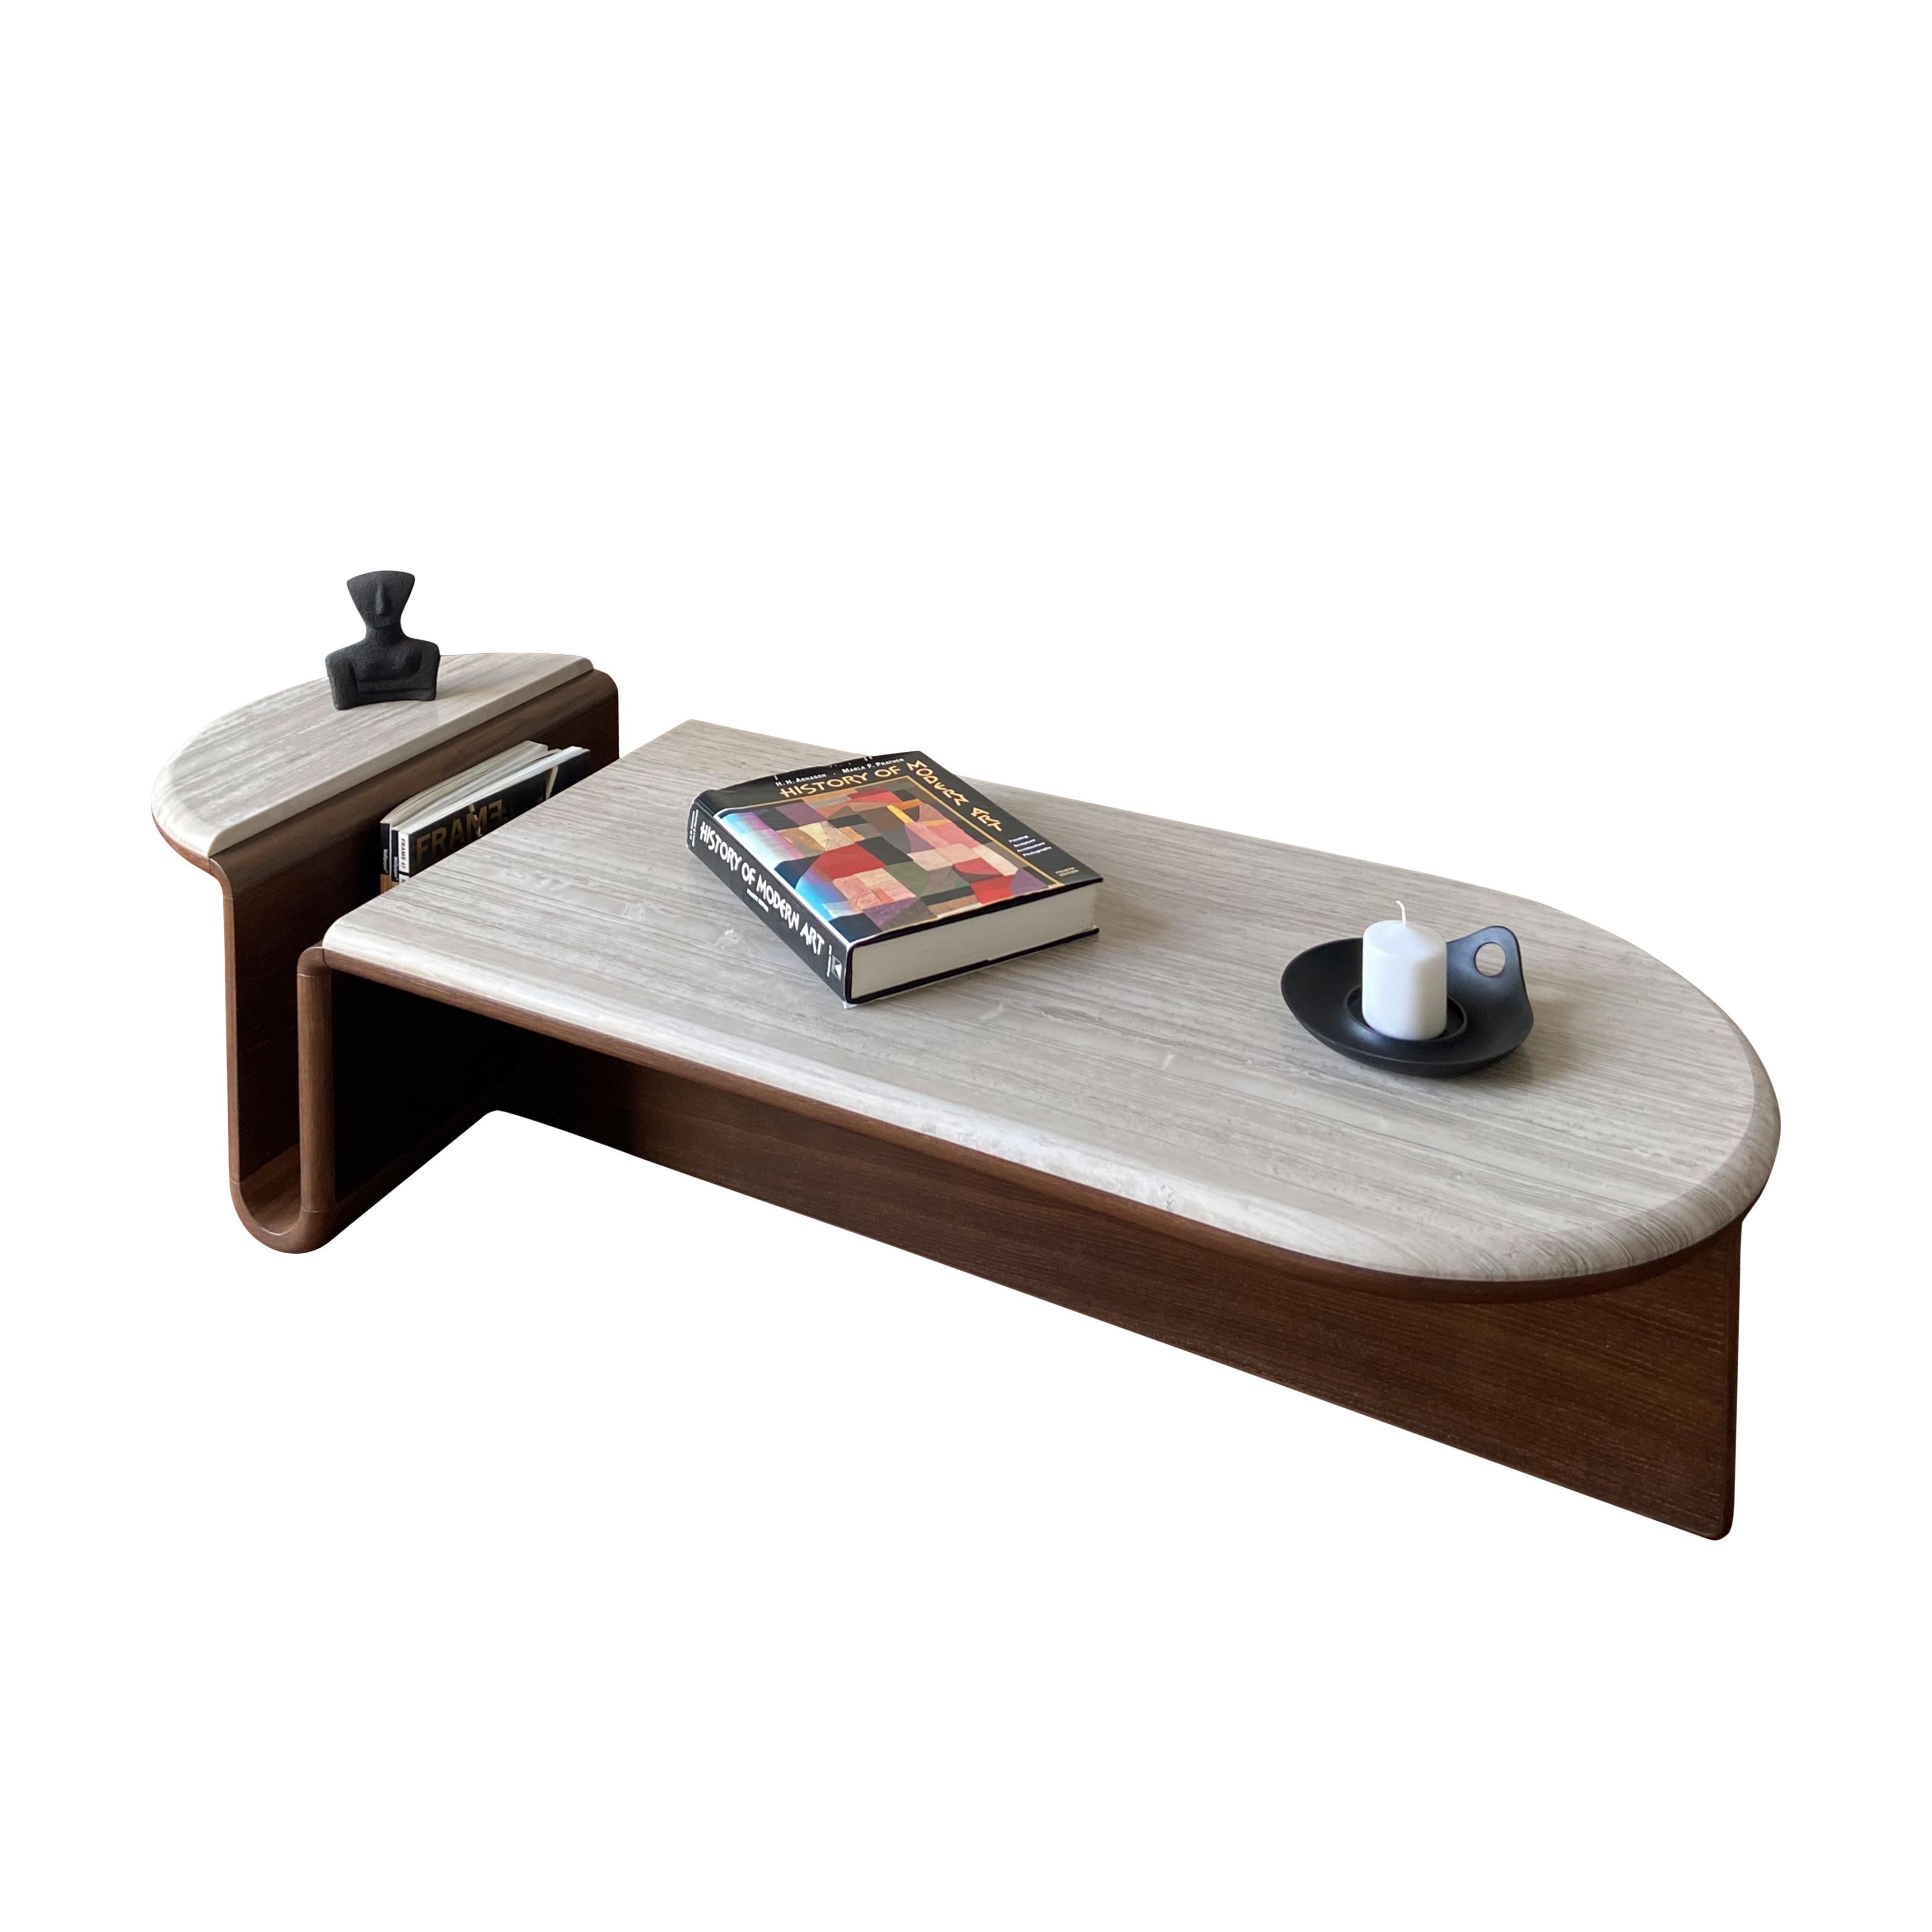 Kanyon est une table basse authentique qui allie fonctionnalité et posture sculpturale avec simplicité, beaux matériaux et artisanat exquis. 

Inspiré par la beauté topographique des structures des canyons, le design traduit les caractéristiques